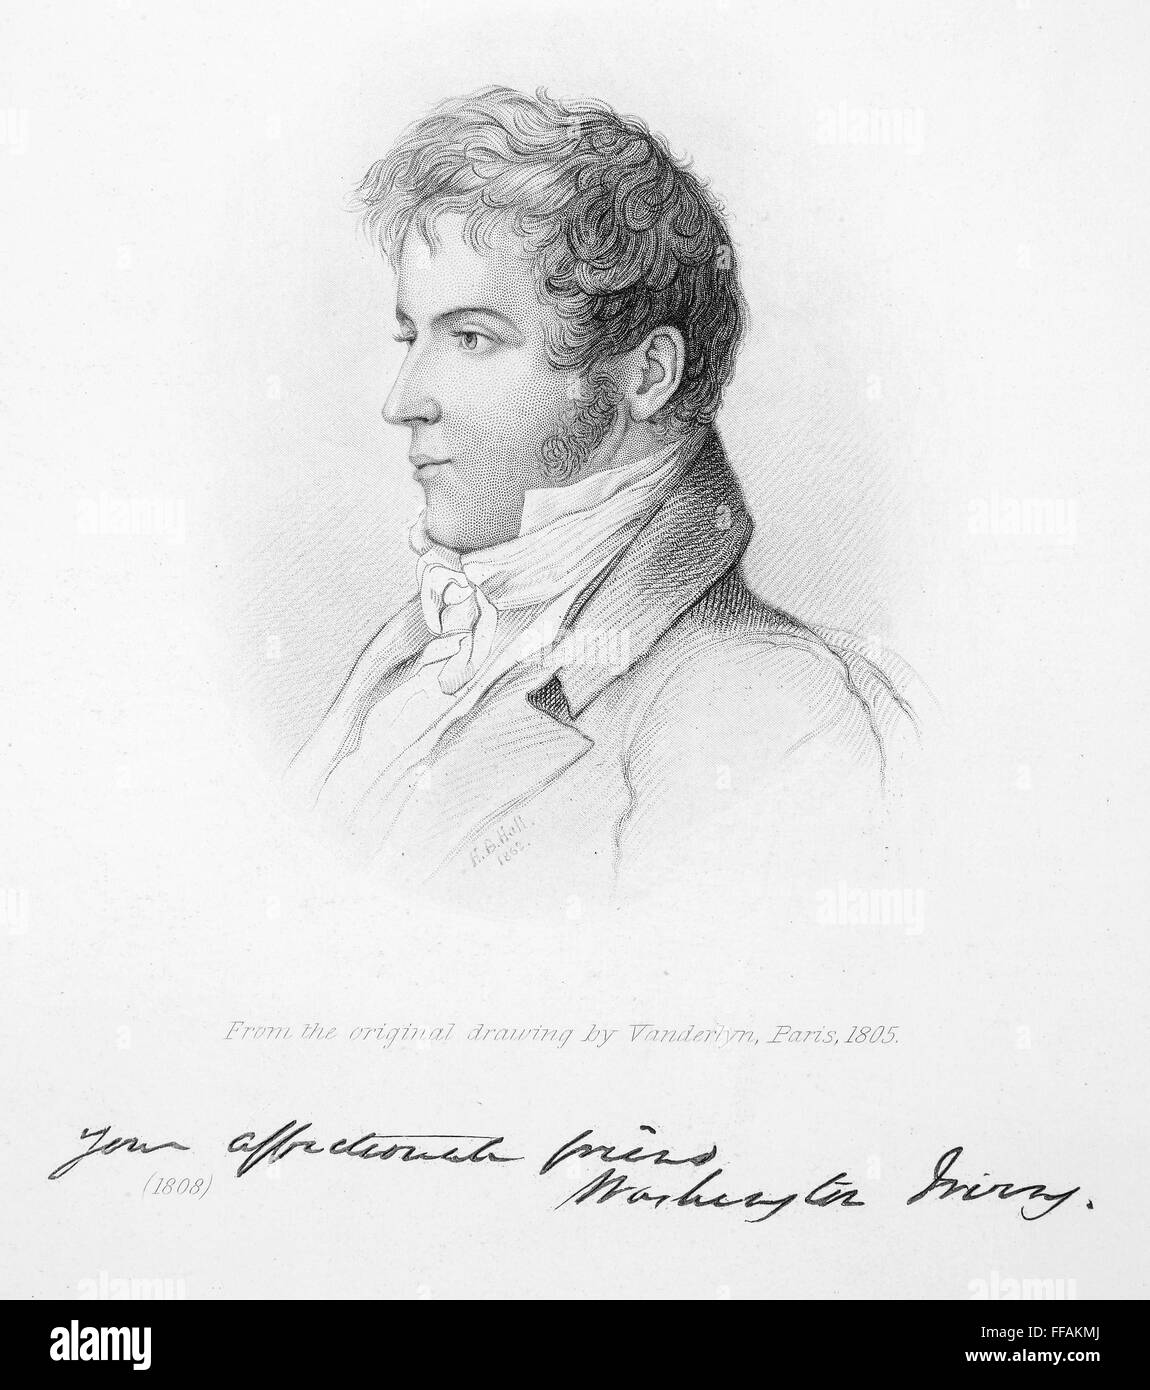 WASHINGTON IRVING /n(1783-1859). American writer. Etching, French, 1805. Stock Photo